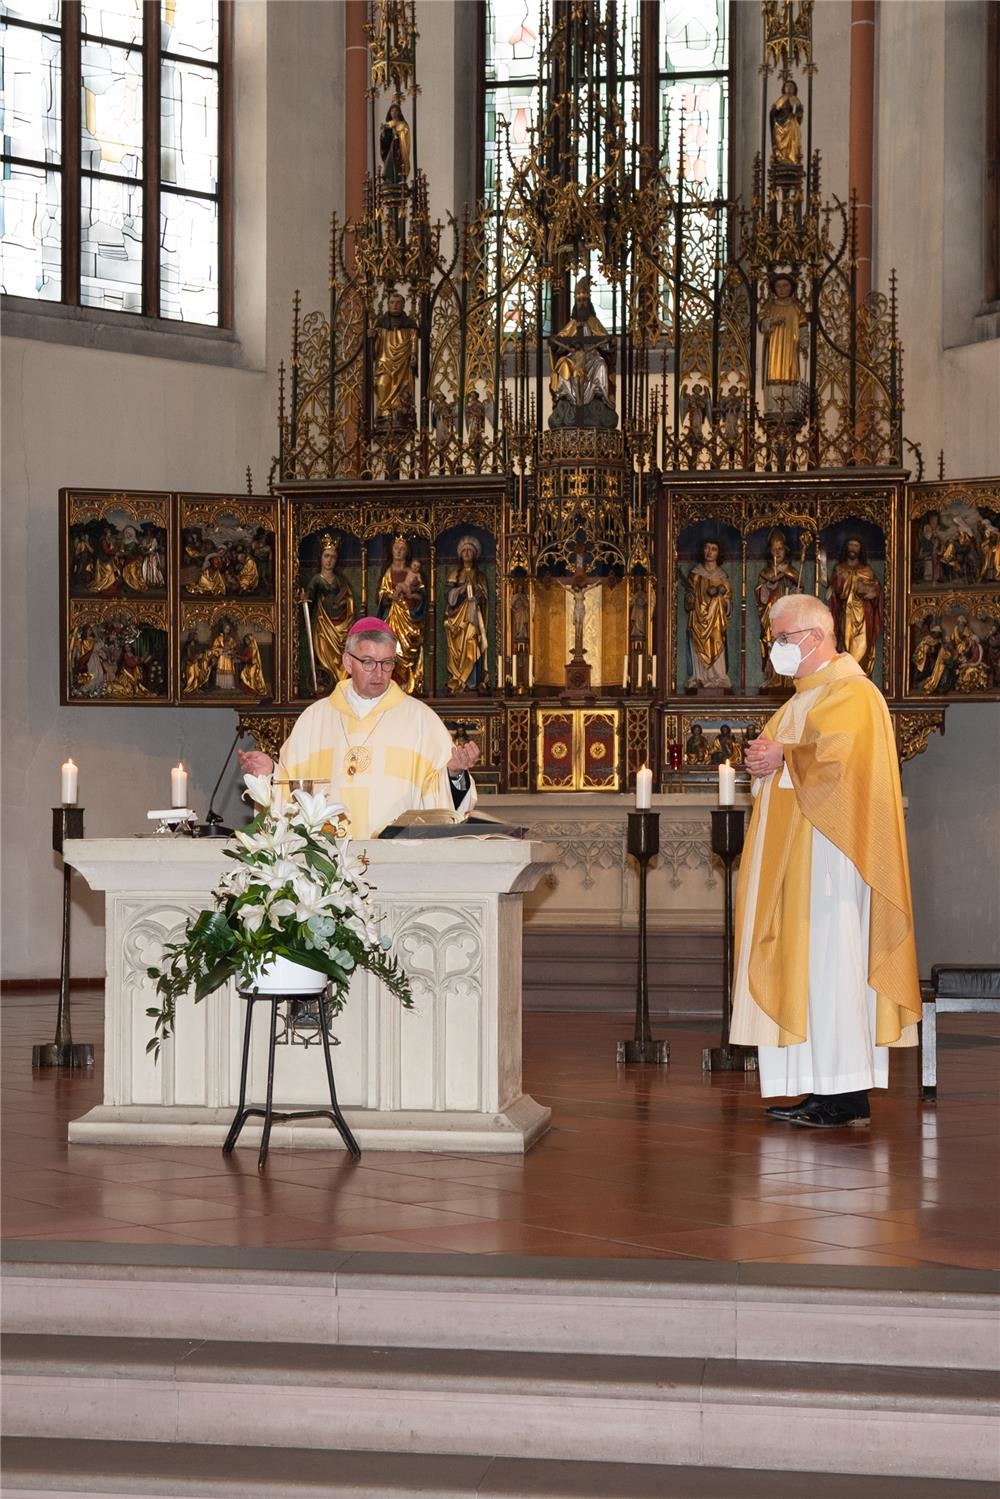 2 Priester am Altar (Quelle: Anja Schaal)